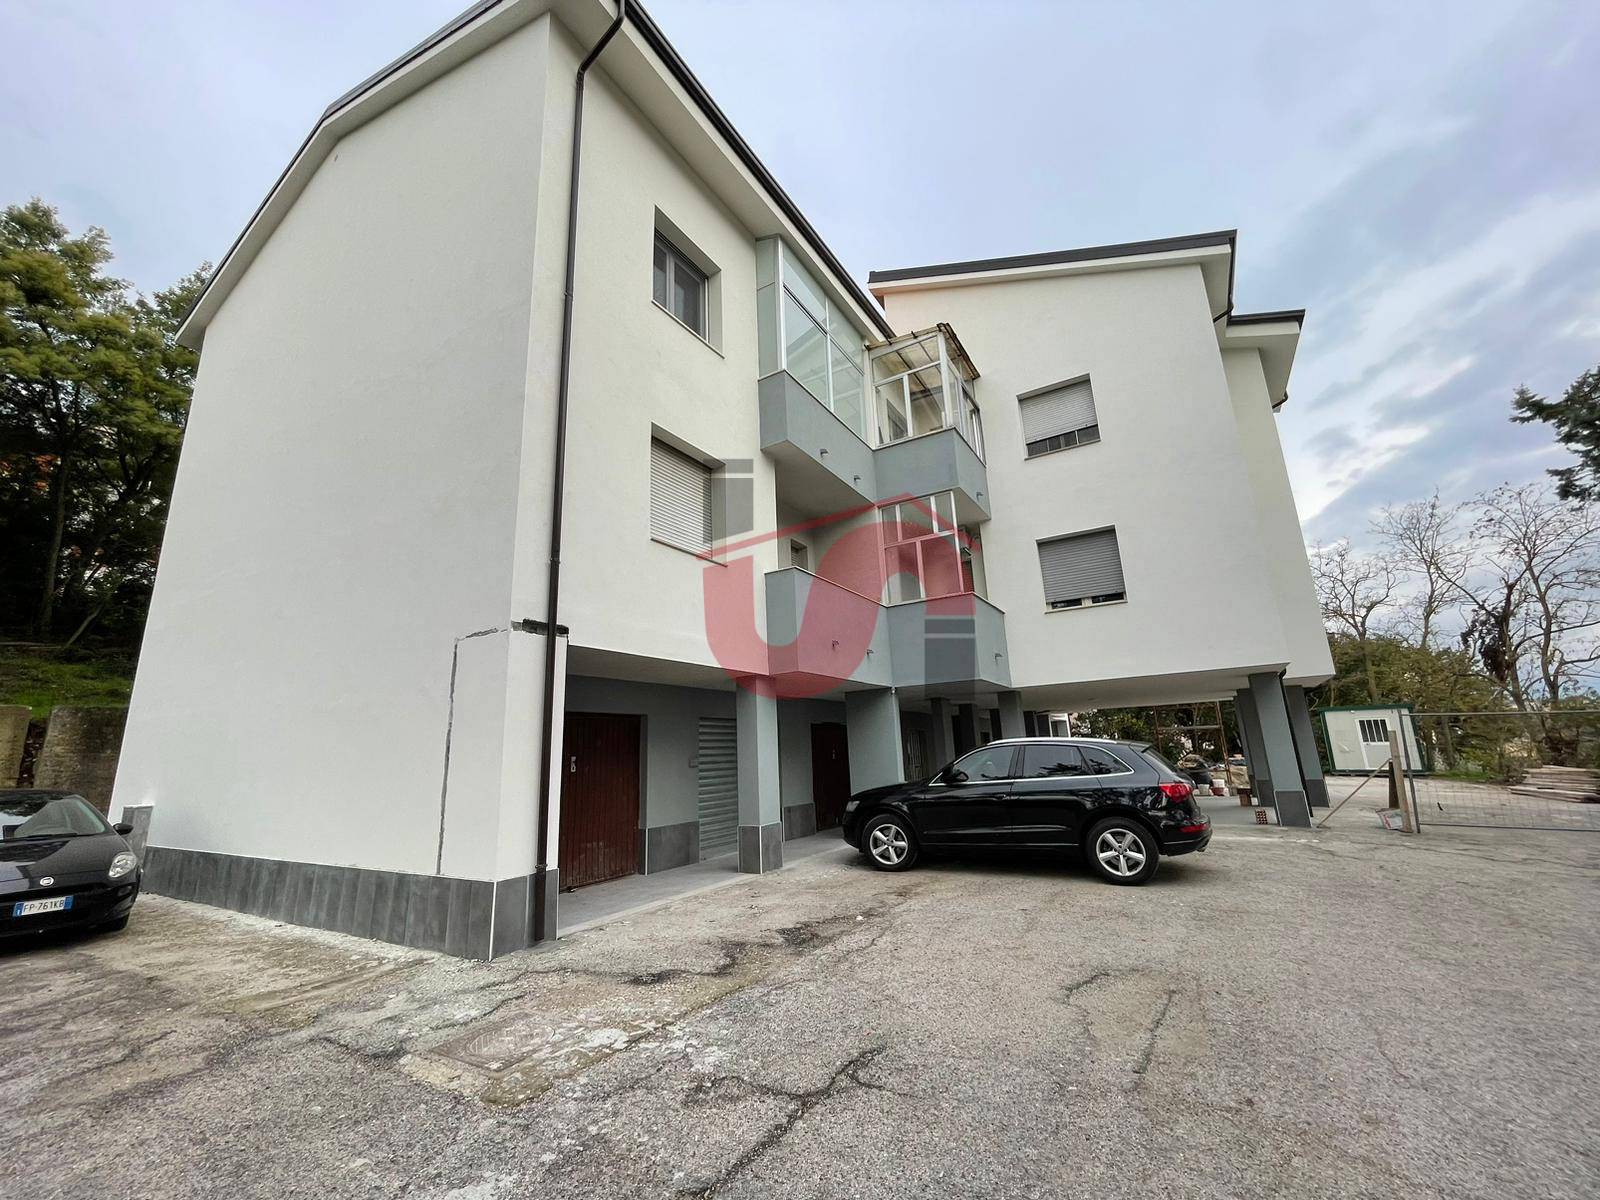 Appartamento in vendita a Benevento, 6 locali, zona Località: CAPODIMONTE, prezzo € 125.000 | PortaleAgenzieImmobiliari.it